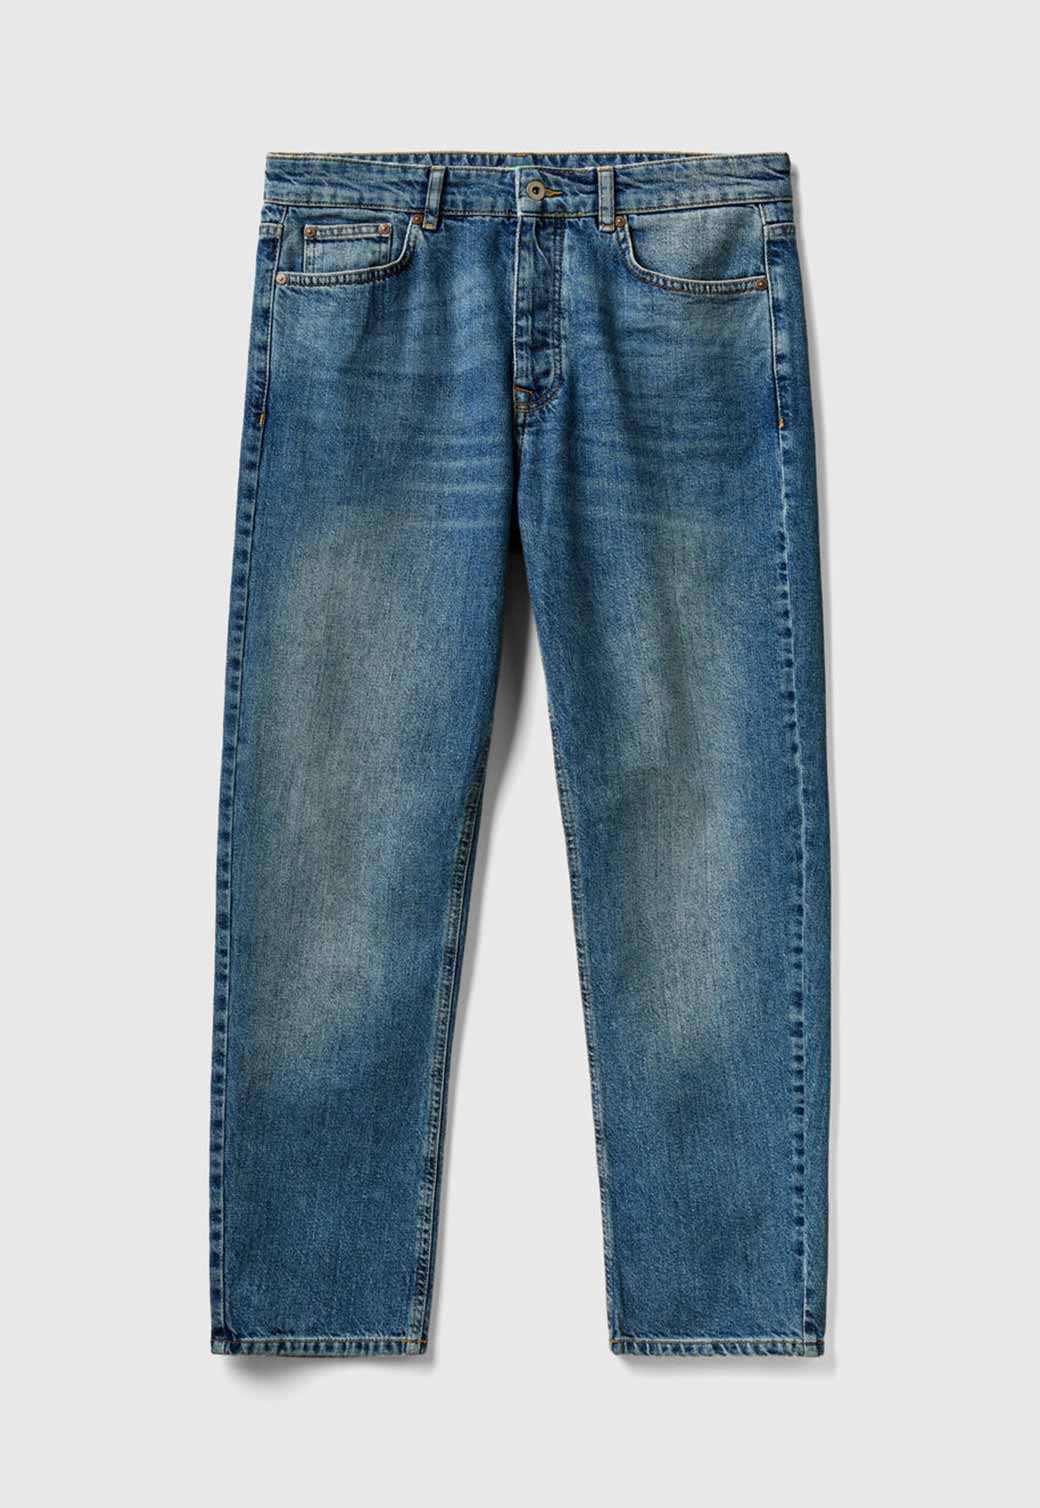 Lavender ג'ינס ארוך לגברים BENETTON